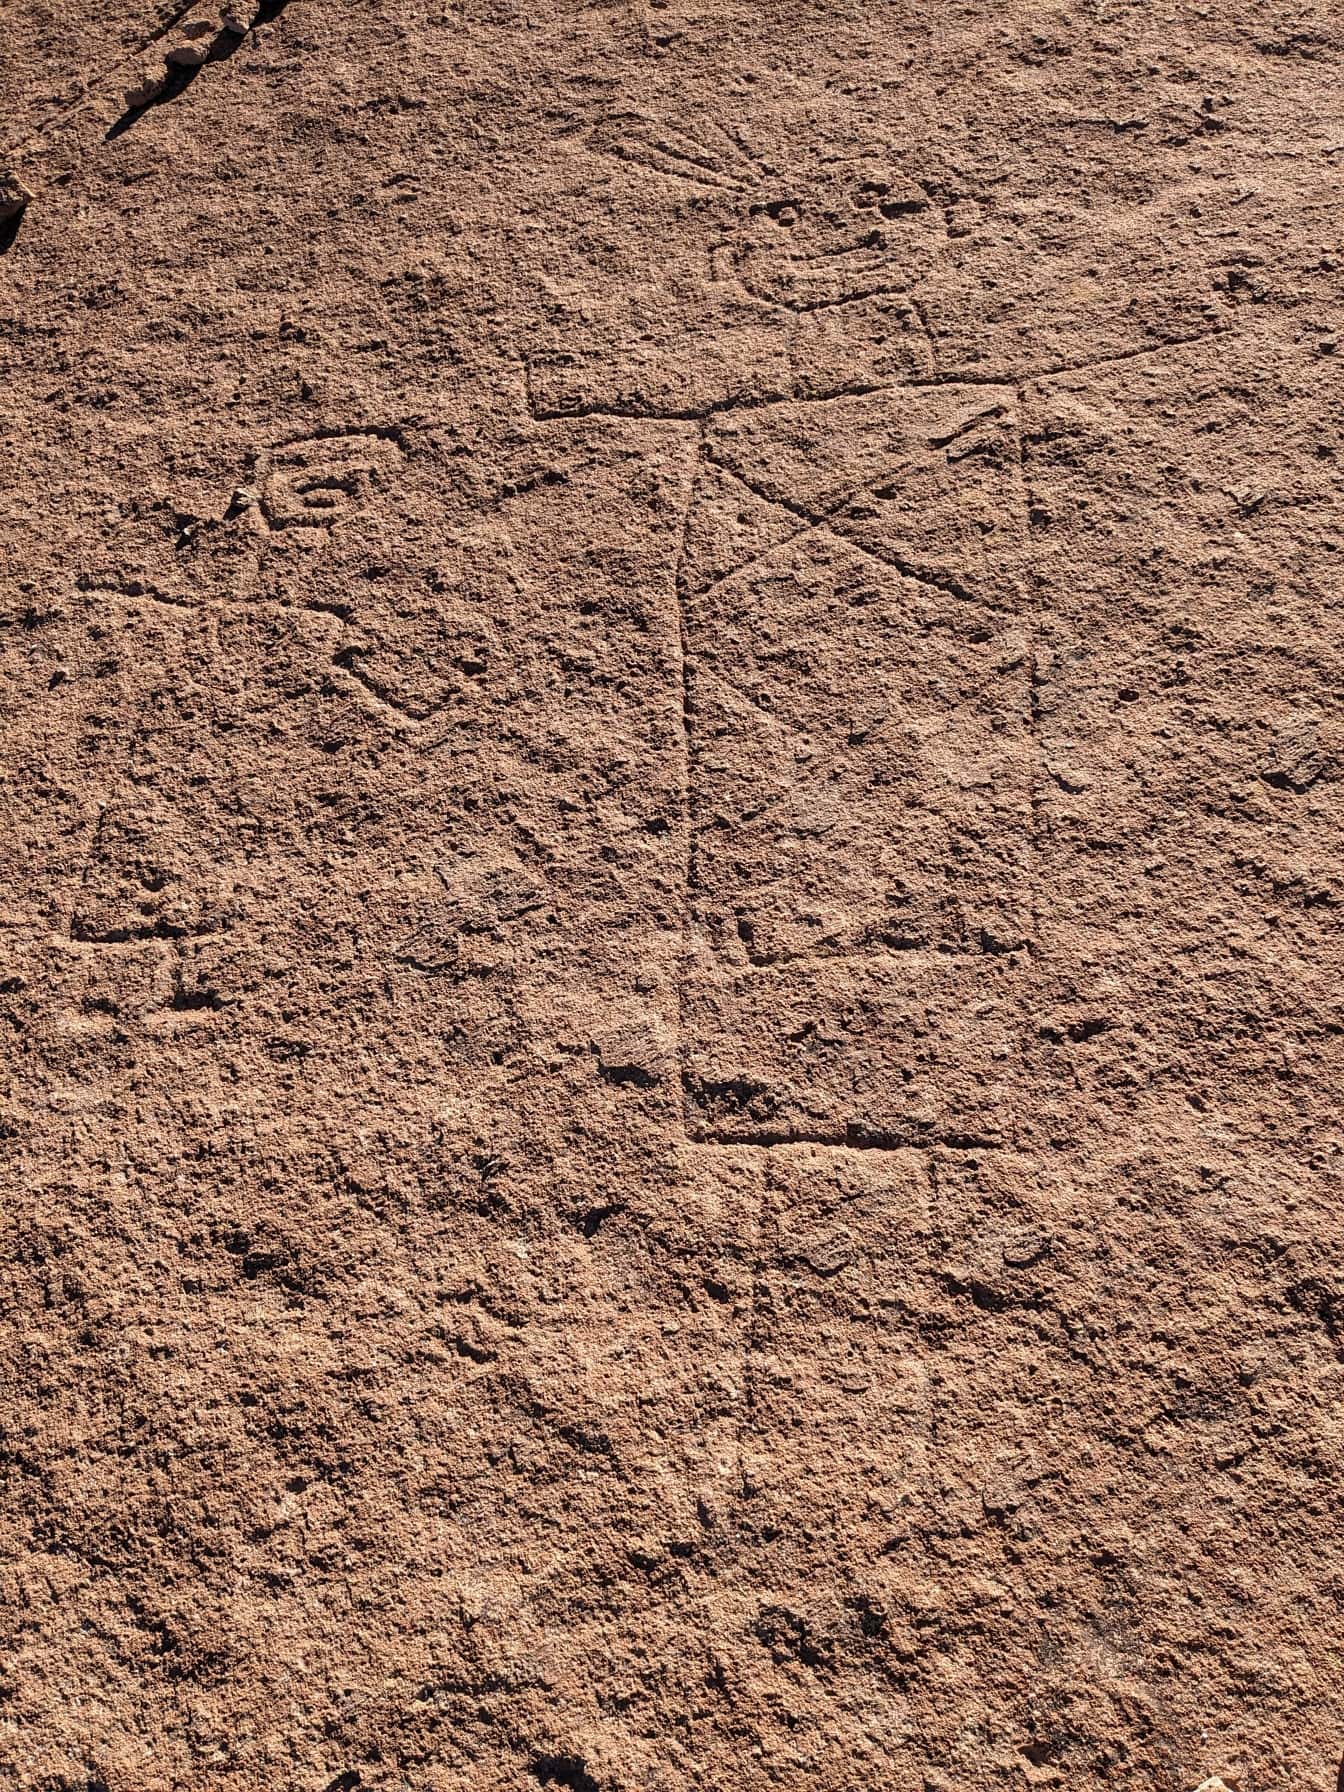 Ukiran batu naif kuno, petroglif yang mirip dengan garis Nazca